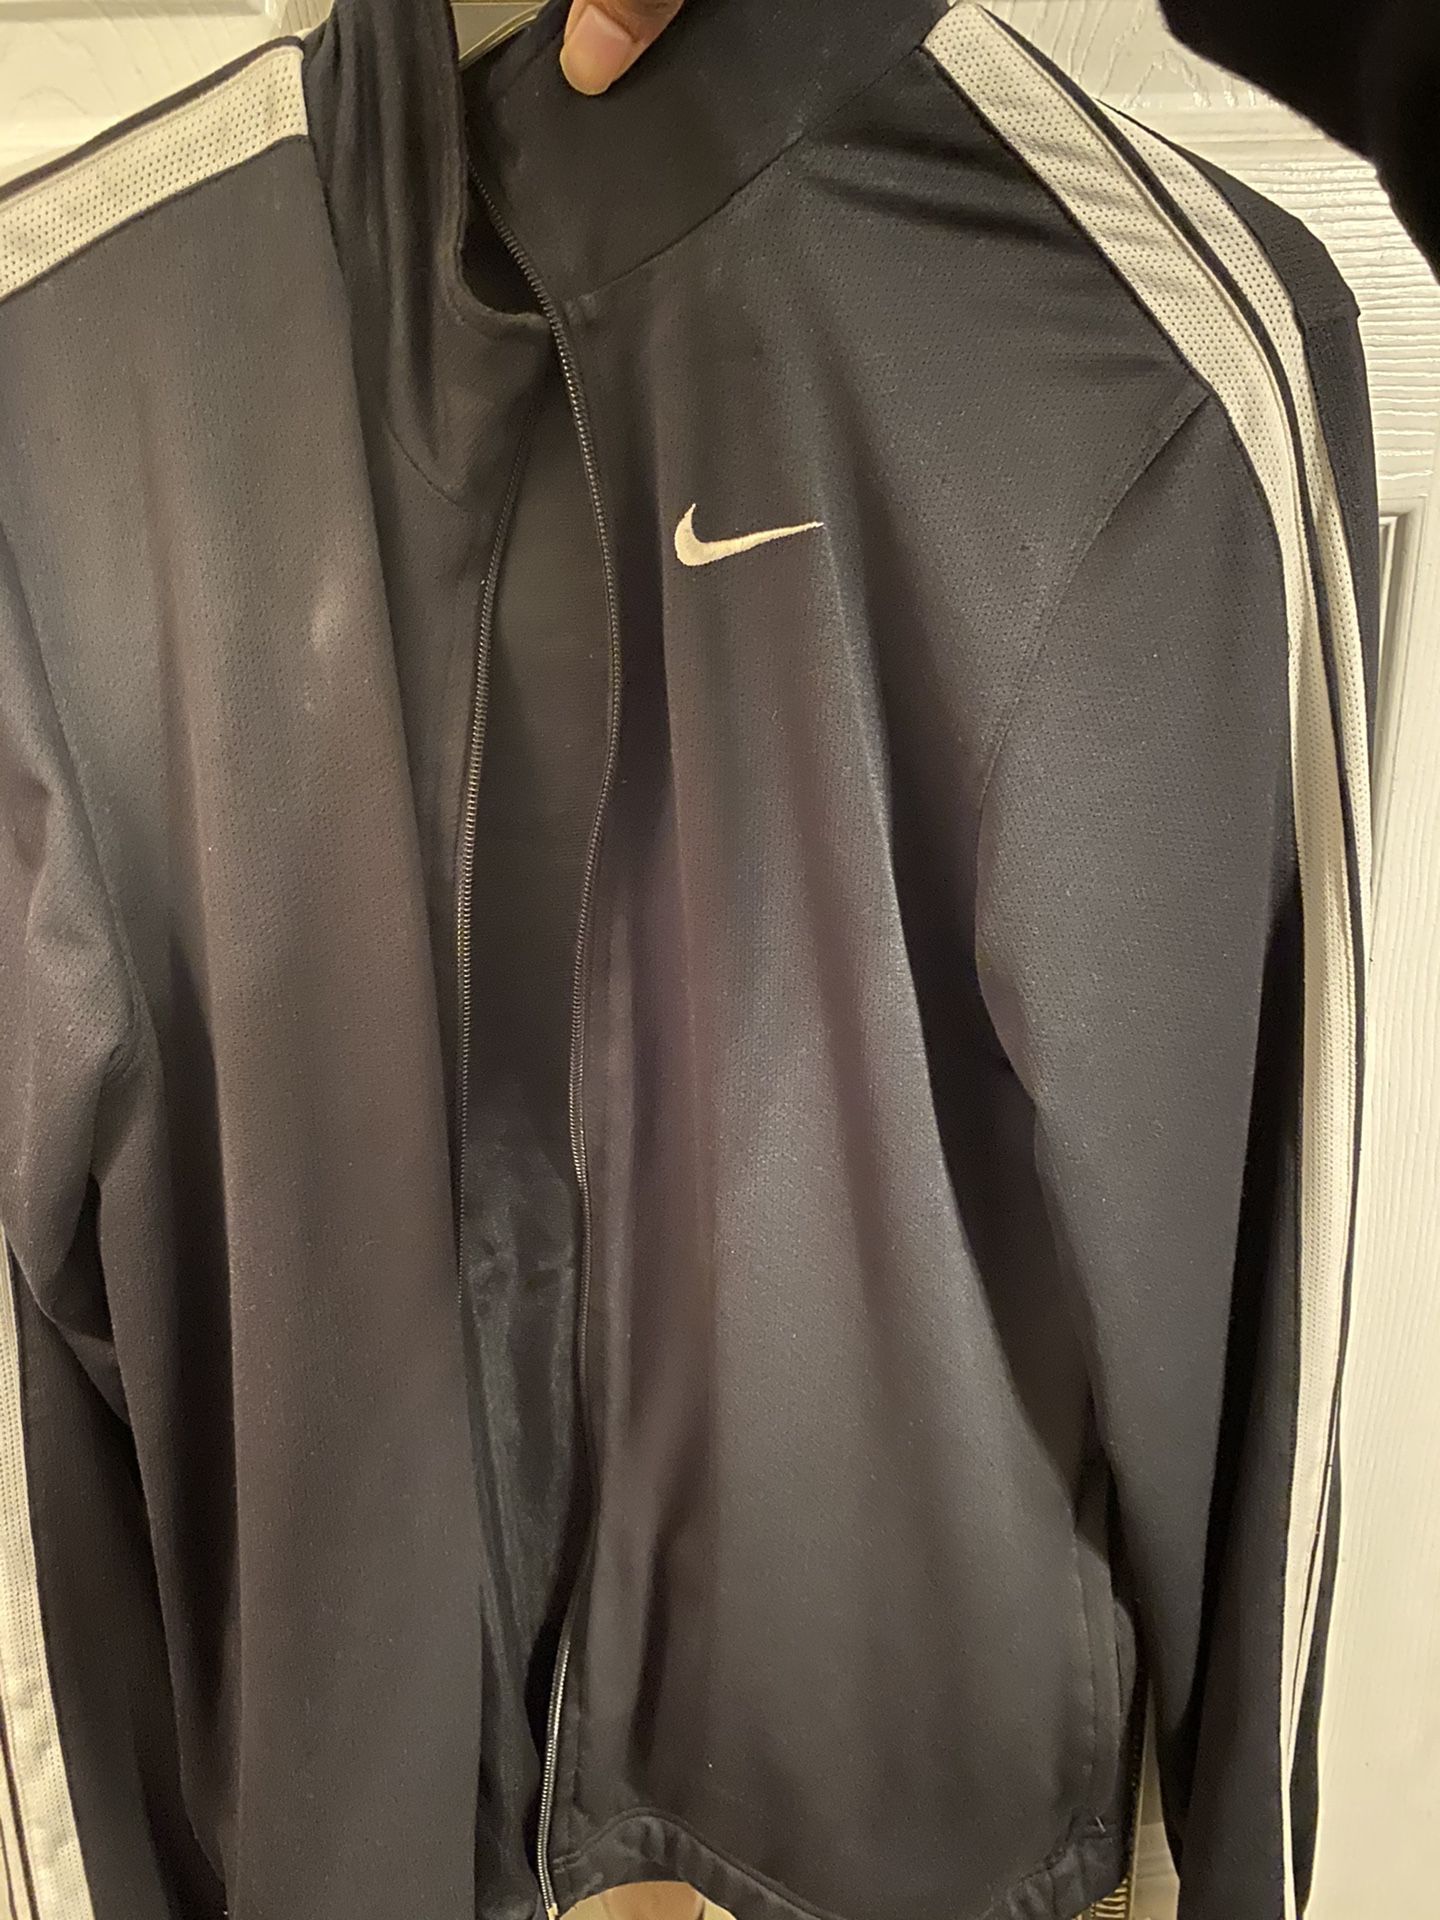 Nike track jacket sz m